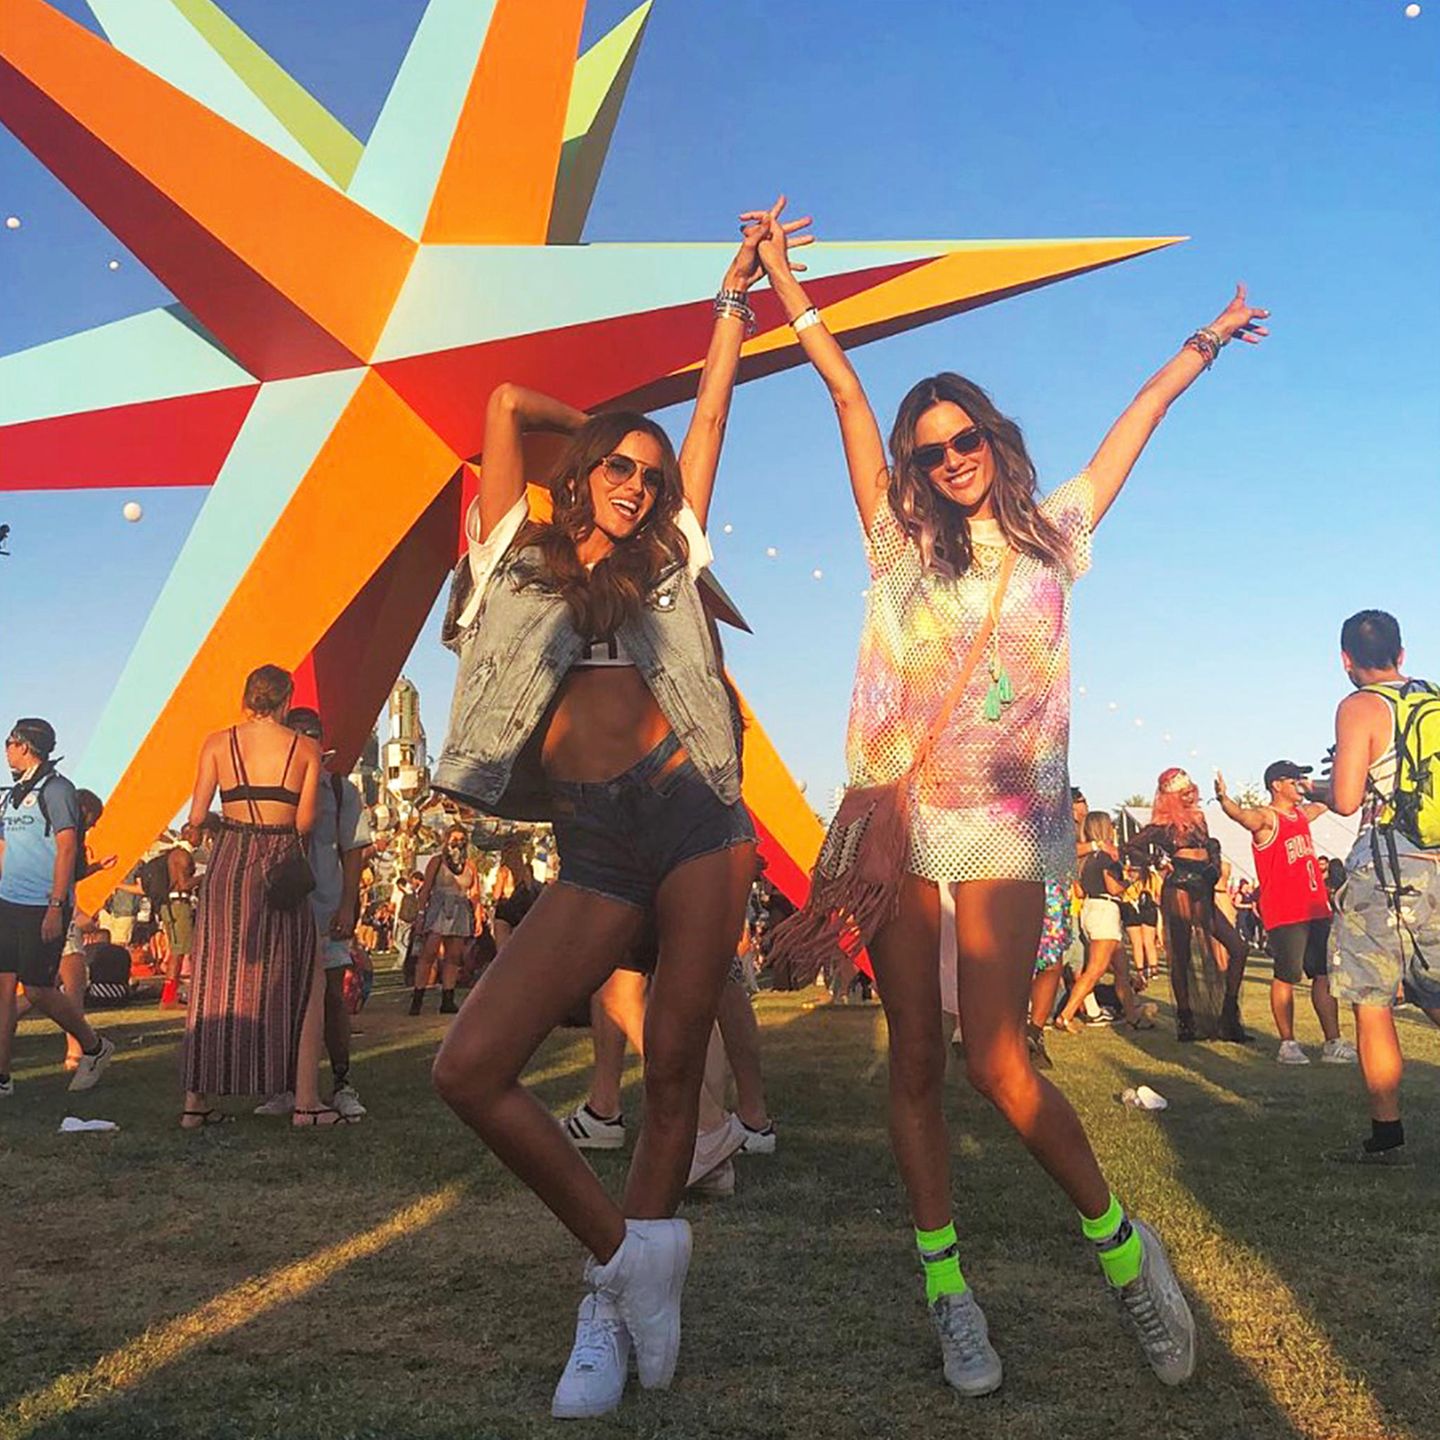 Sommer, Sonne, Supermodels: Izabel Goulart und Alessandra Ambrosio feiern ihren zweiten Coachella-Tag gemeinsam und ausgelassen.